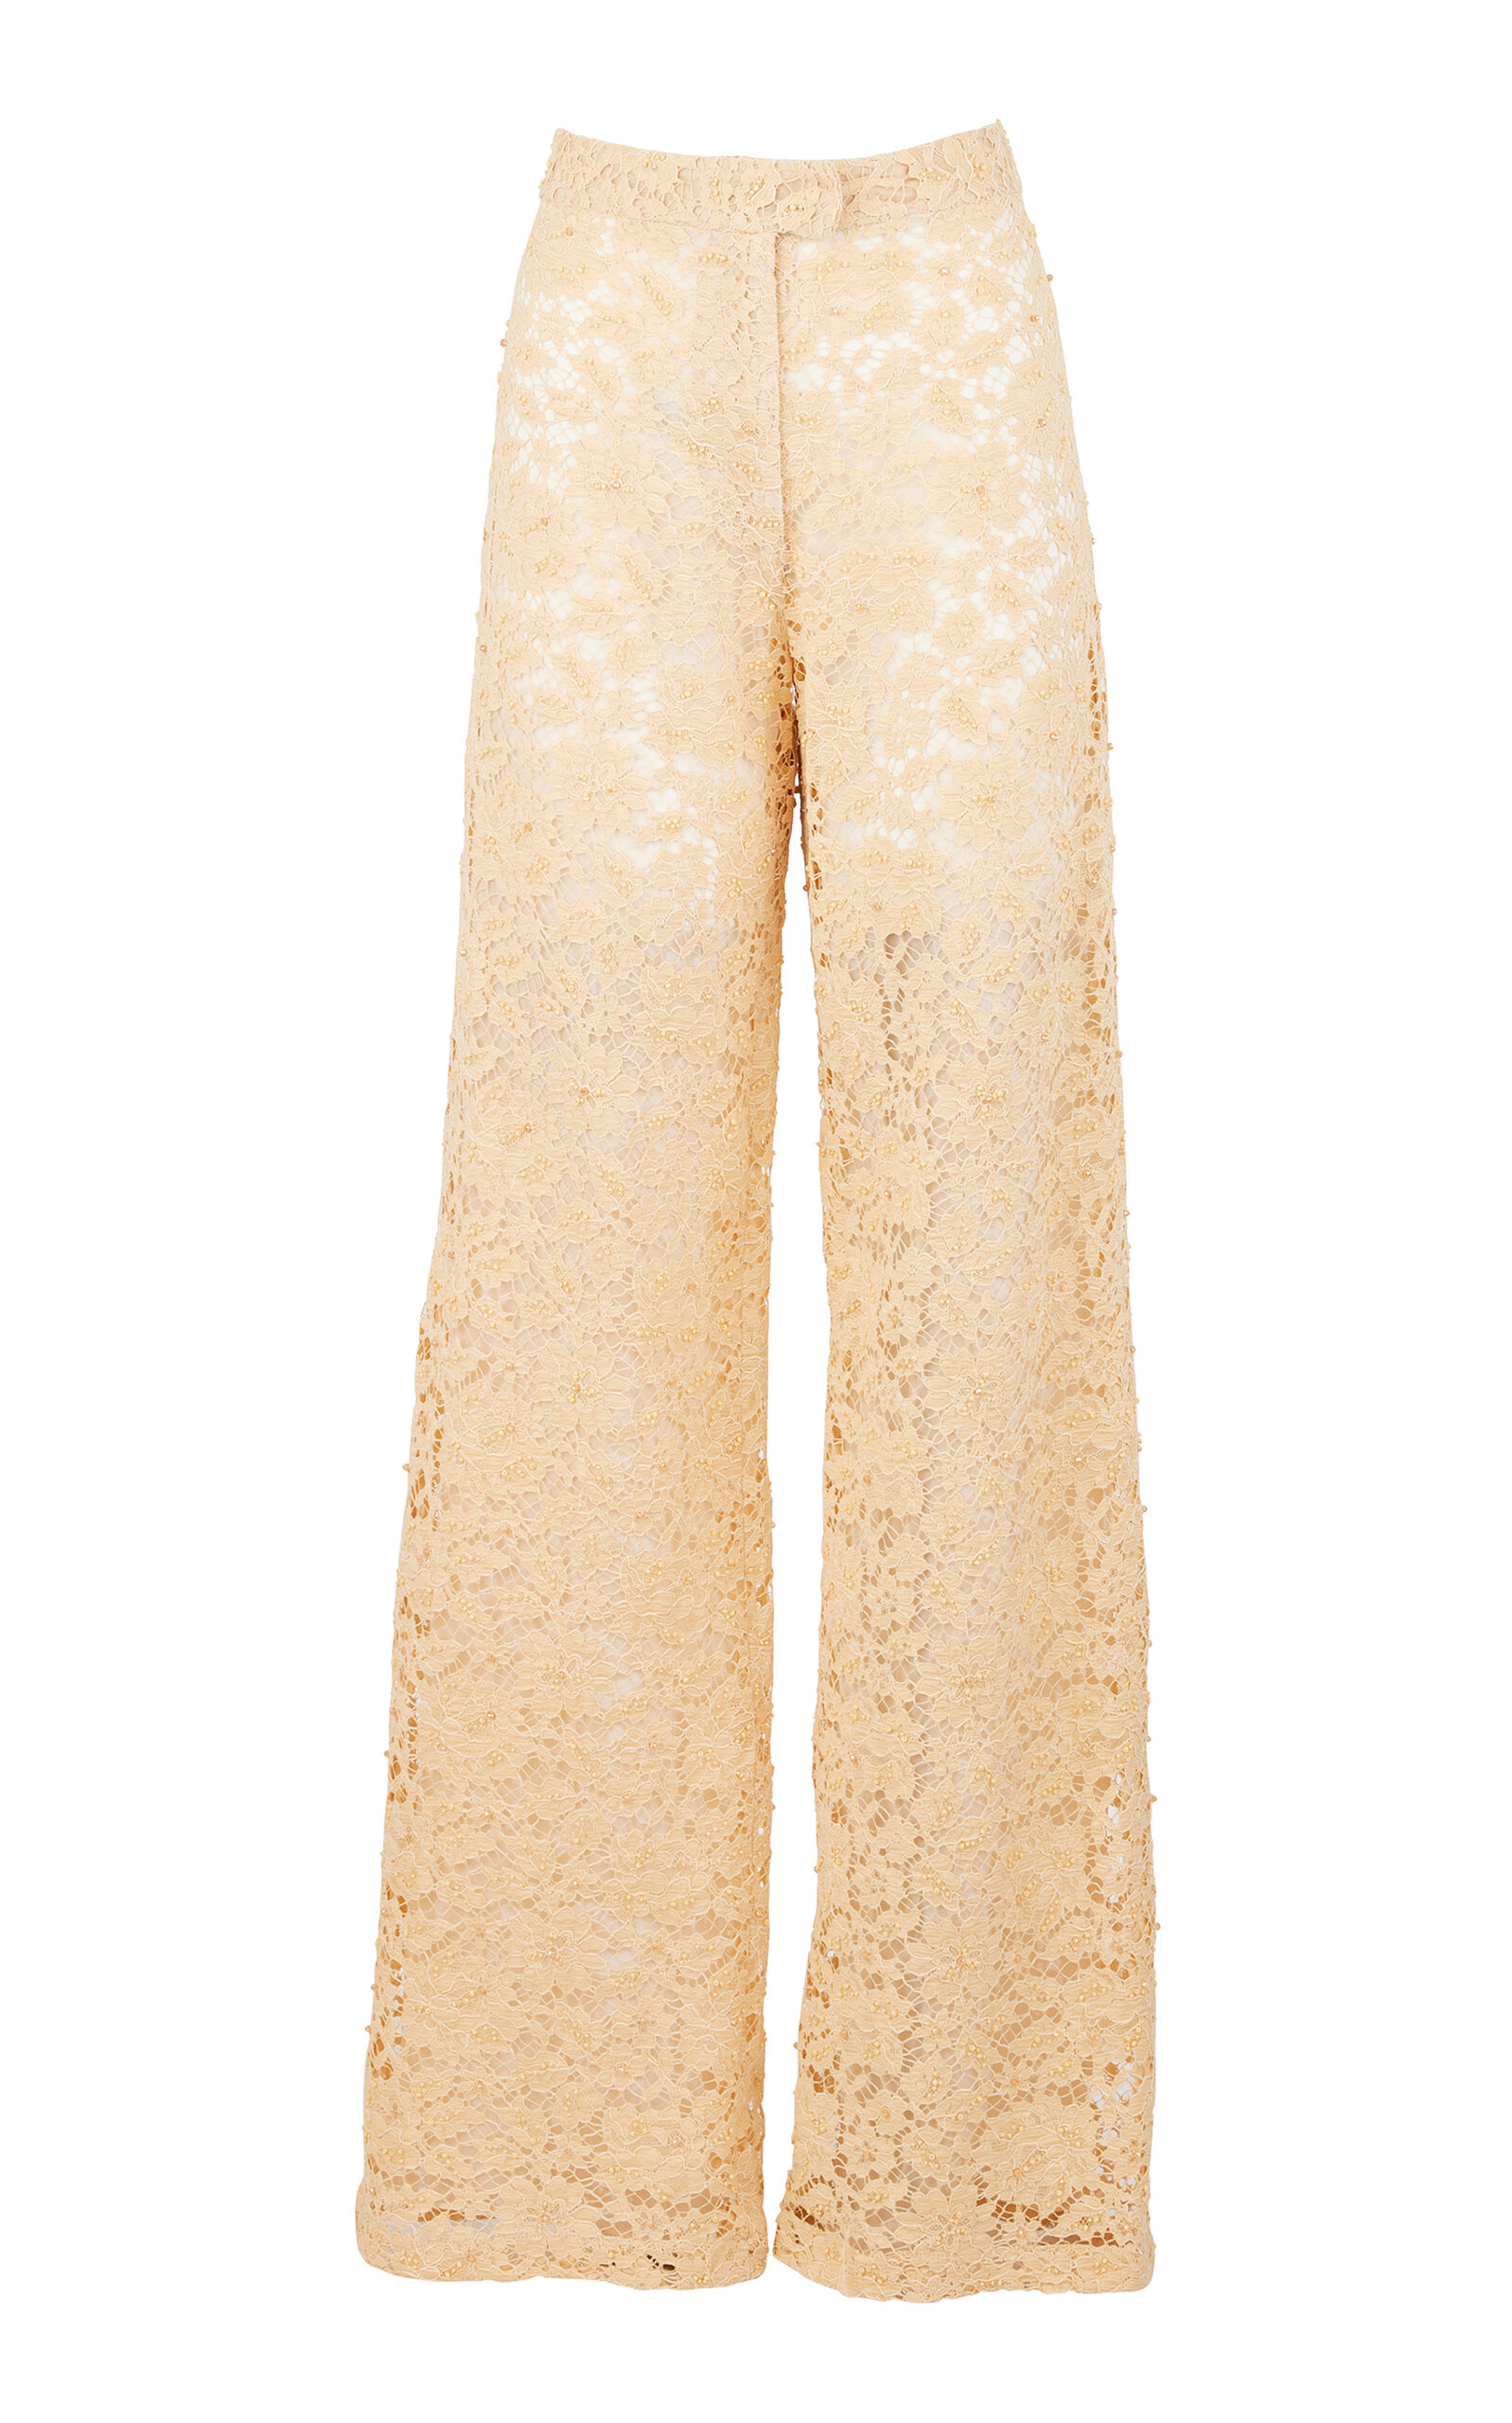 Valen Cotton Lace Pants